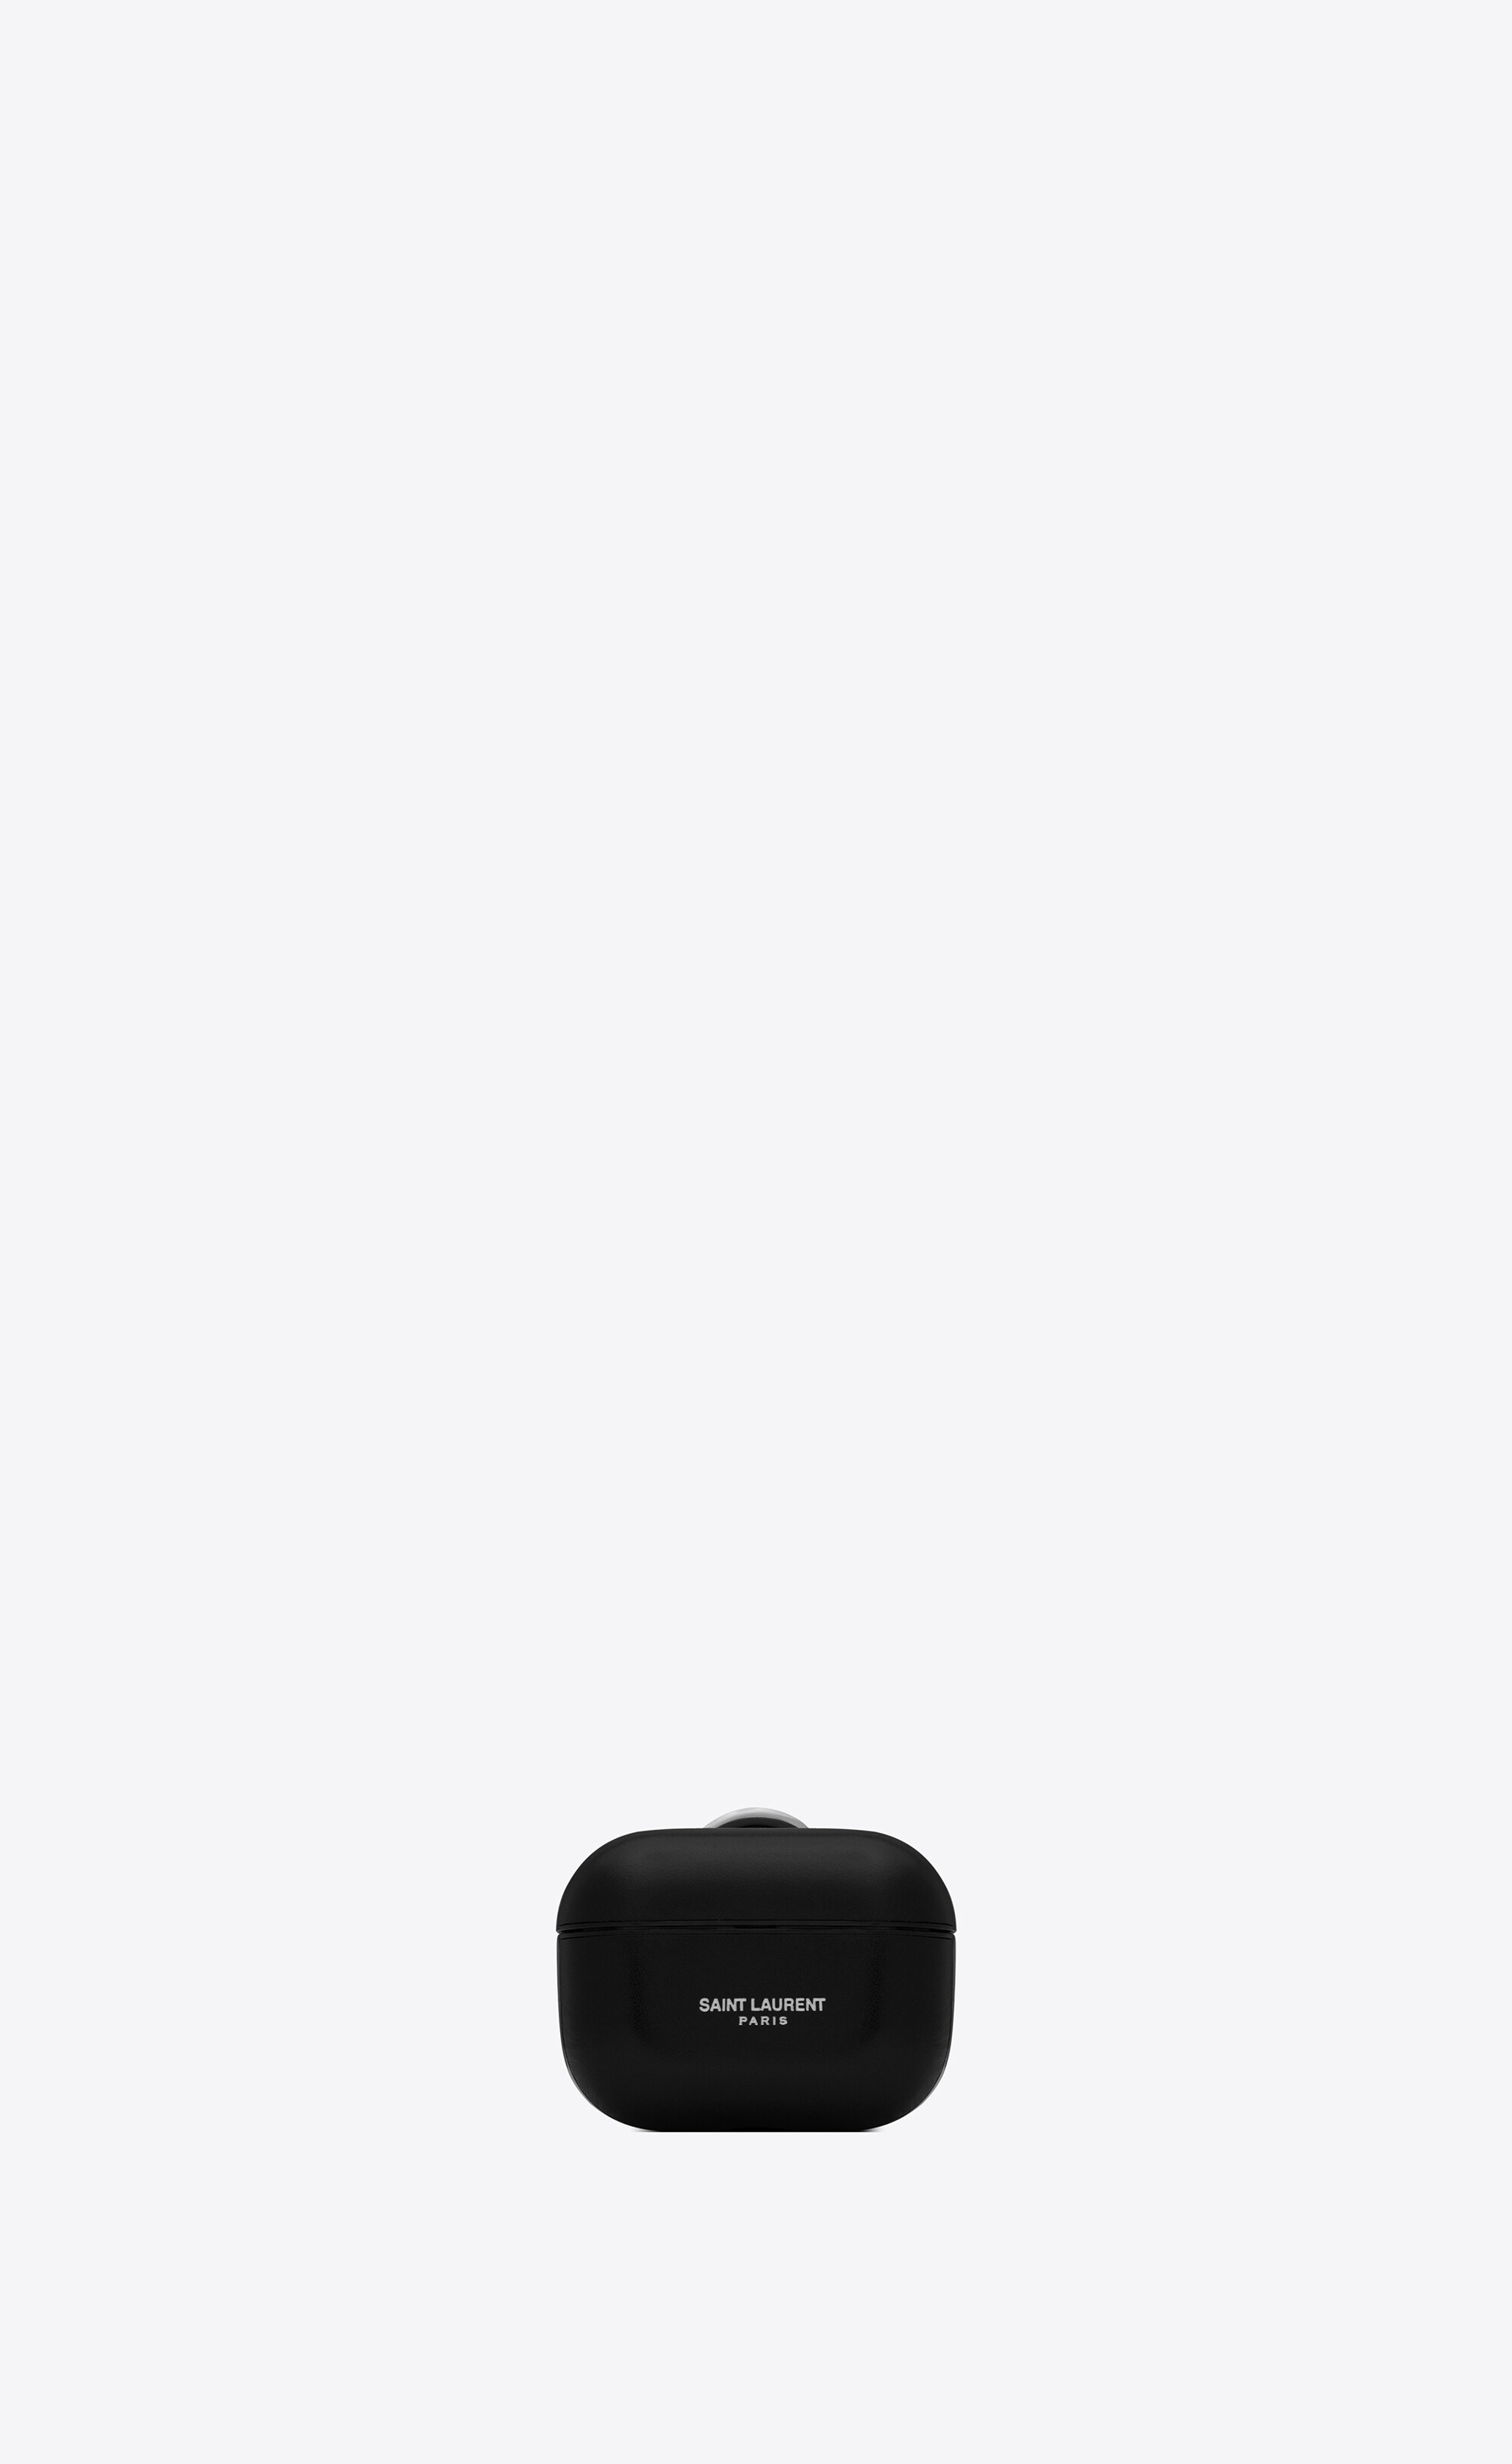 Saint Laurent Covers E Cases in Black for Men